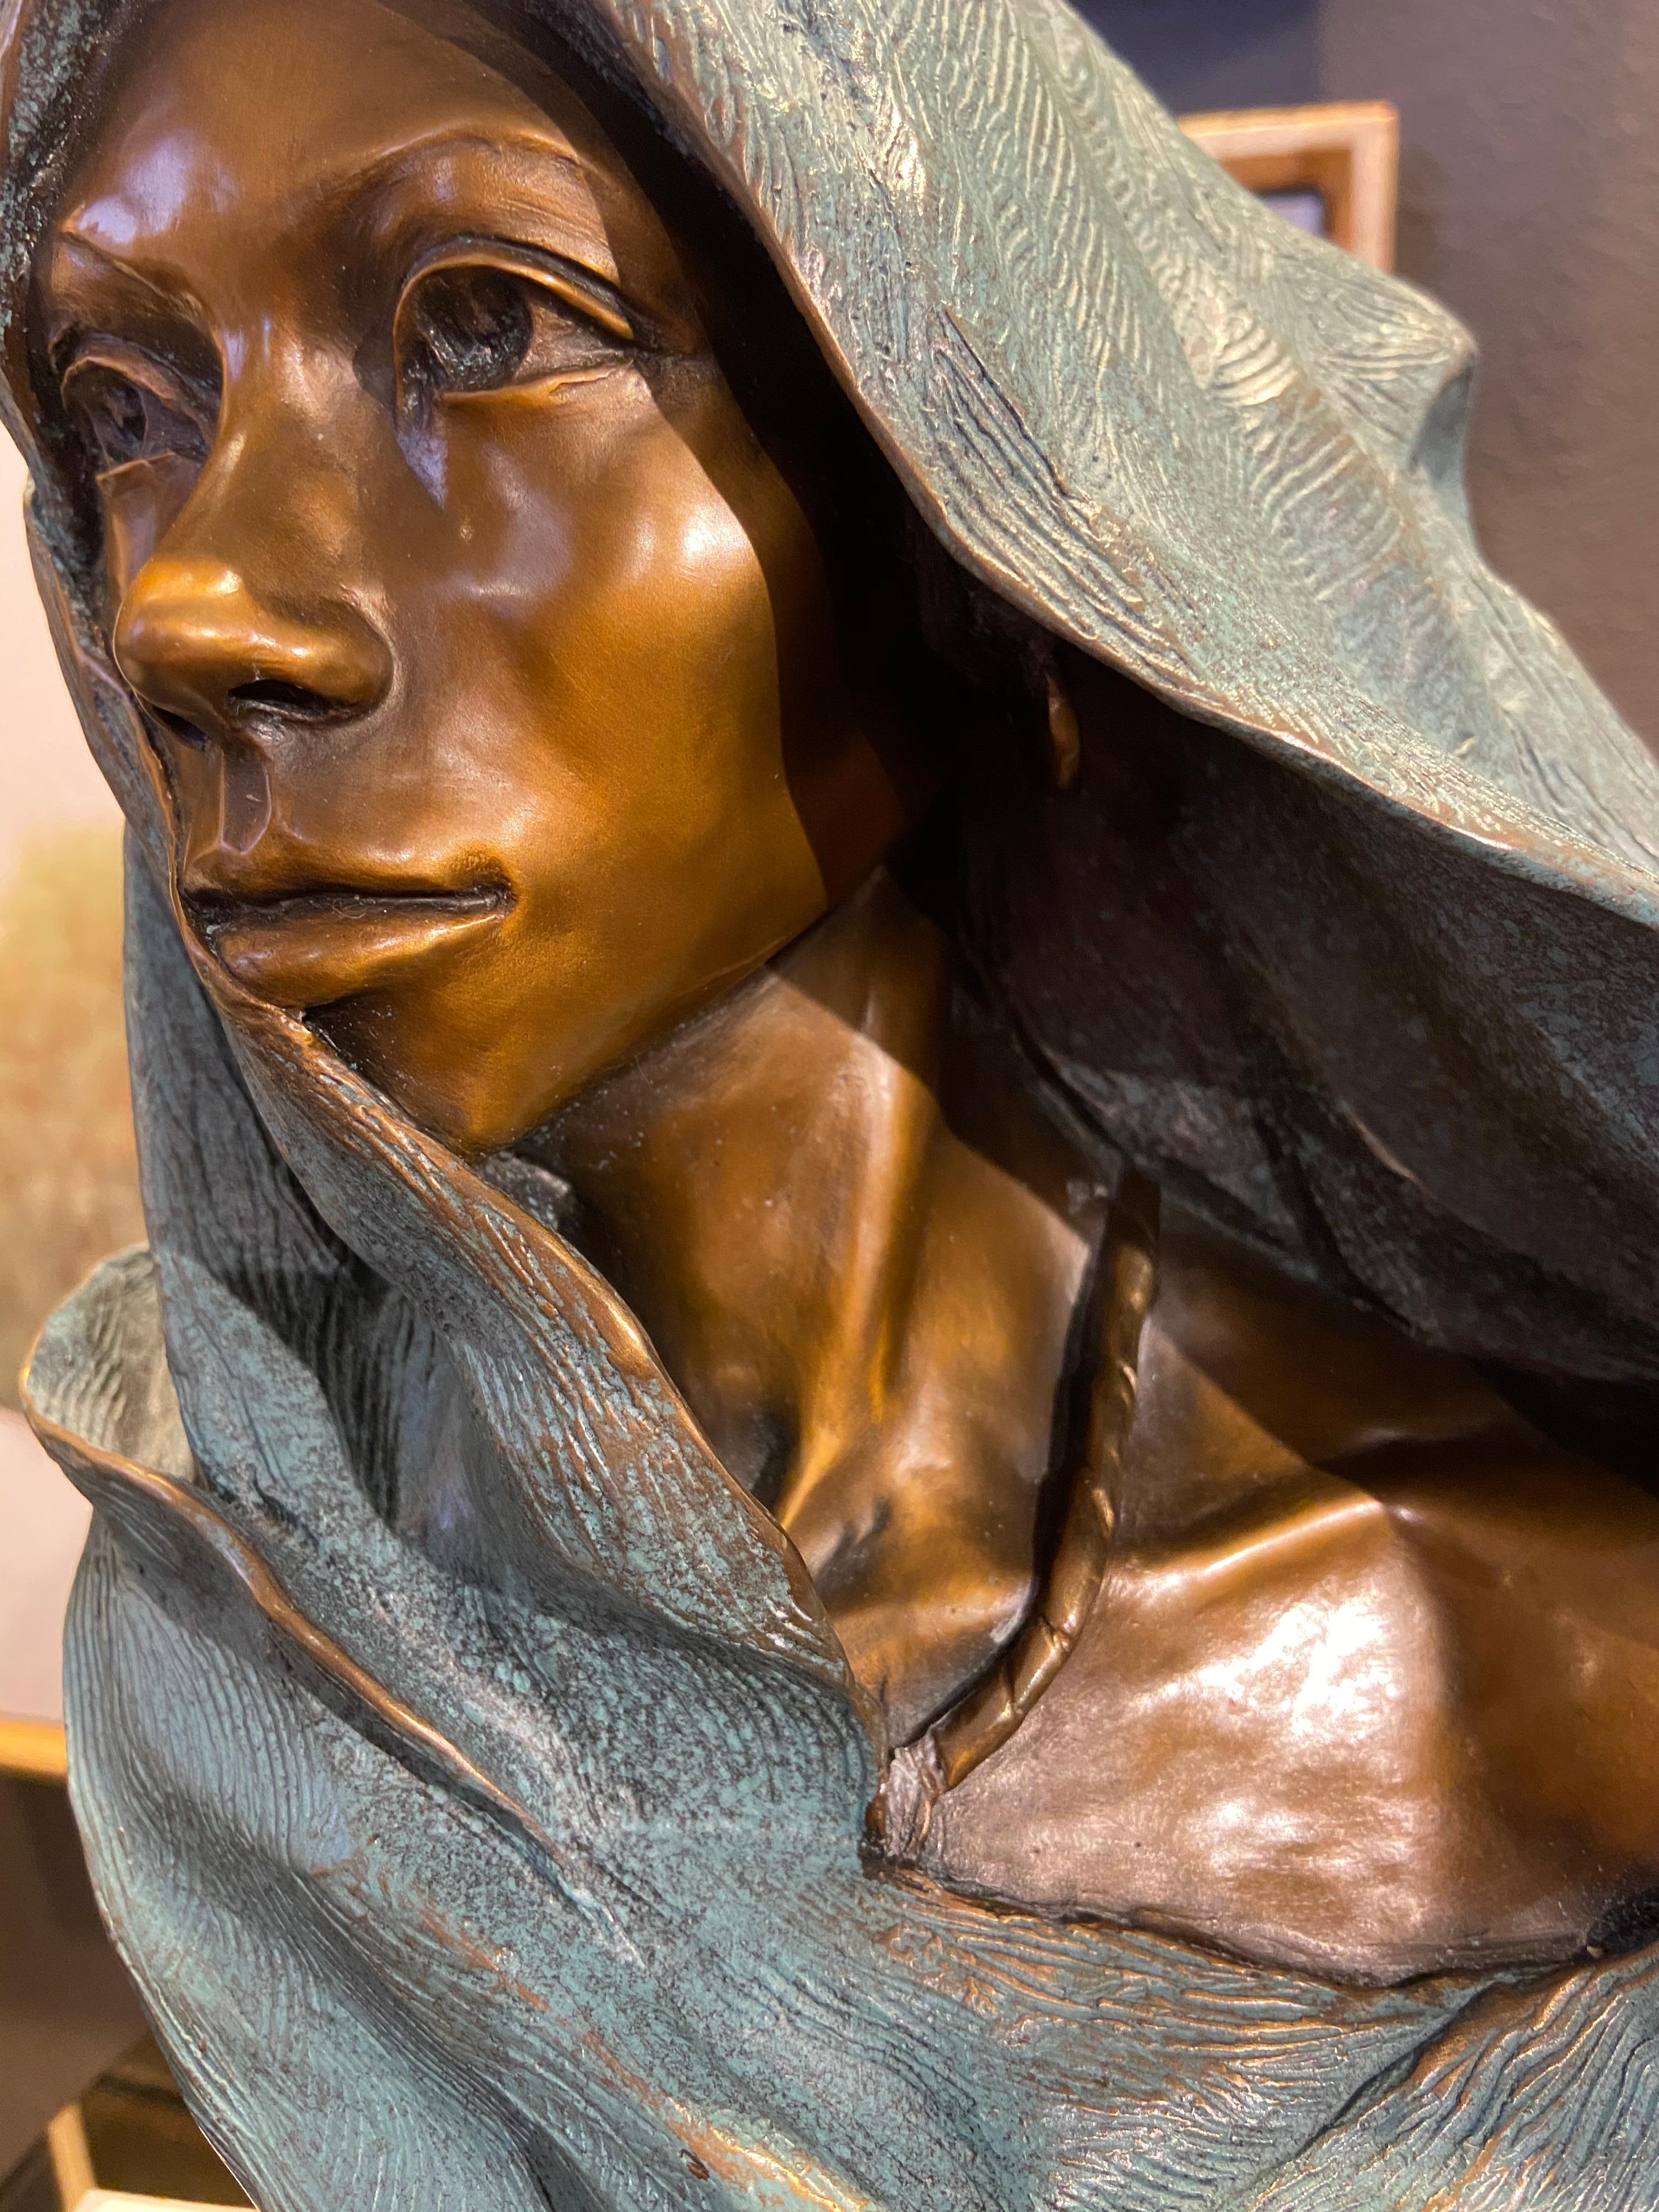 Gewandet in Indigo von Denny Haskew
Figurative weibliche Büste aus Bronze, montiert auf einem Sockel aus Granit und Nussbaumholz mit Drehscheibe und Namensschild aus Messing, wie abgebildet. Es weist eine wunderschöne Patina auf, die aus